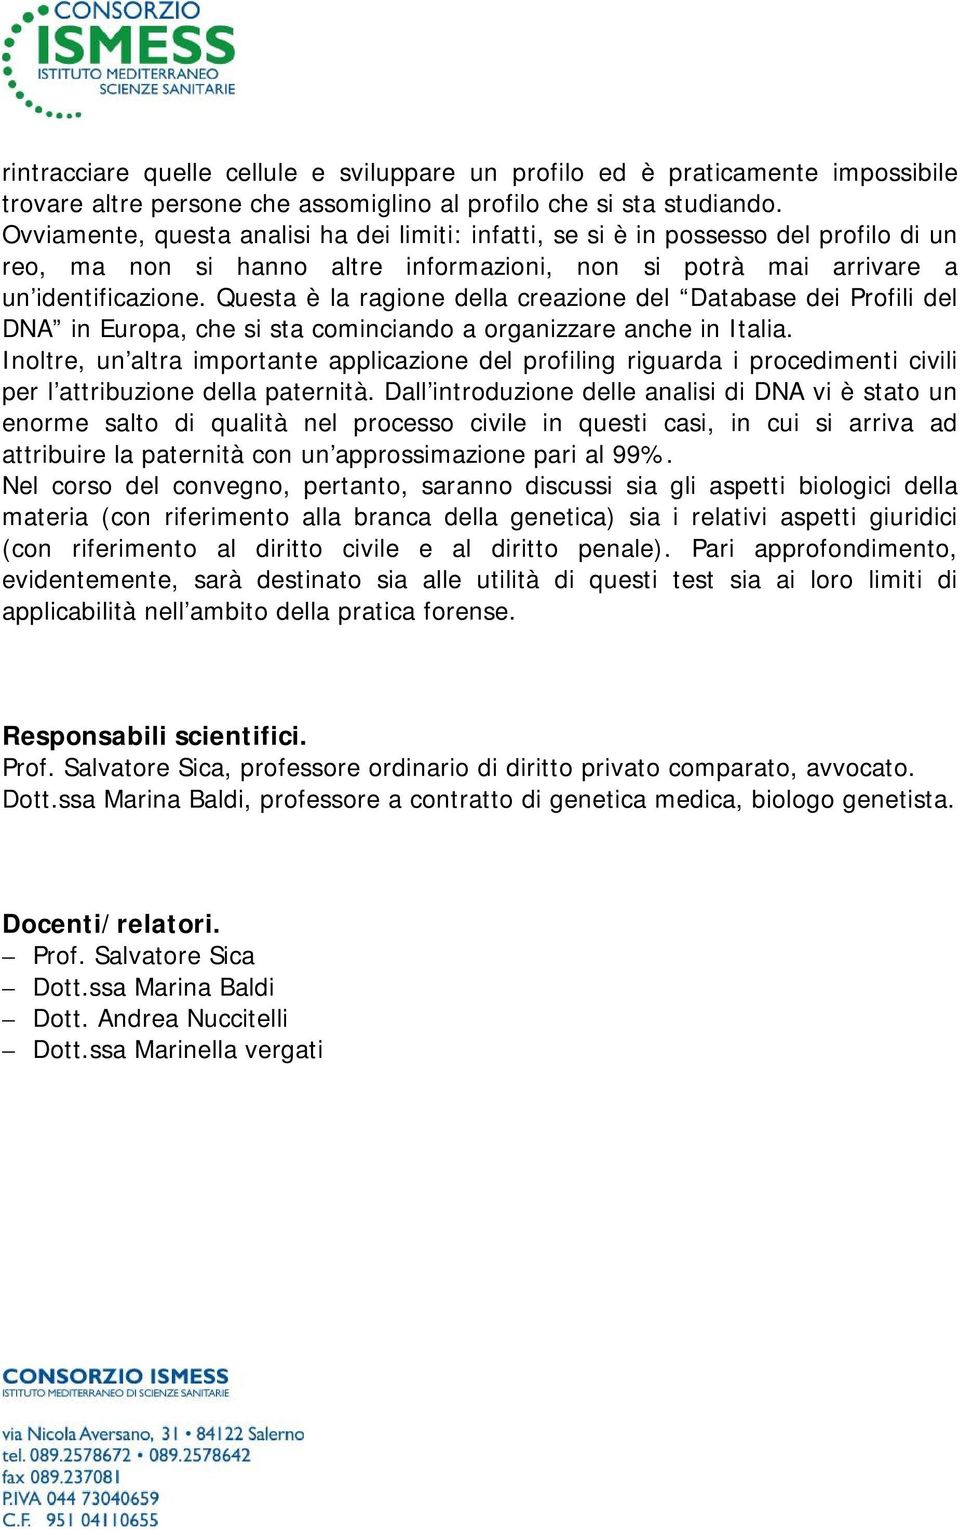 Questa è la ragione della creazione del Database dei Profili del DNA in Europa, che si sta cominciando a organizzare anche in Italia.